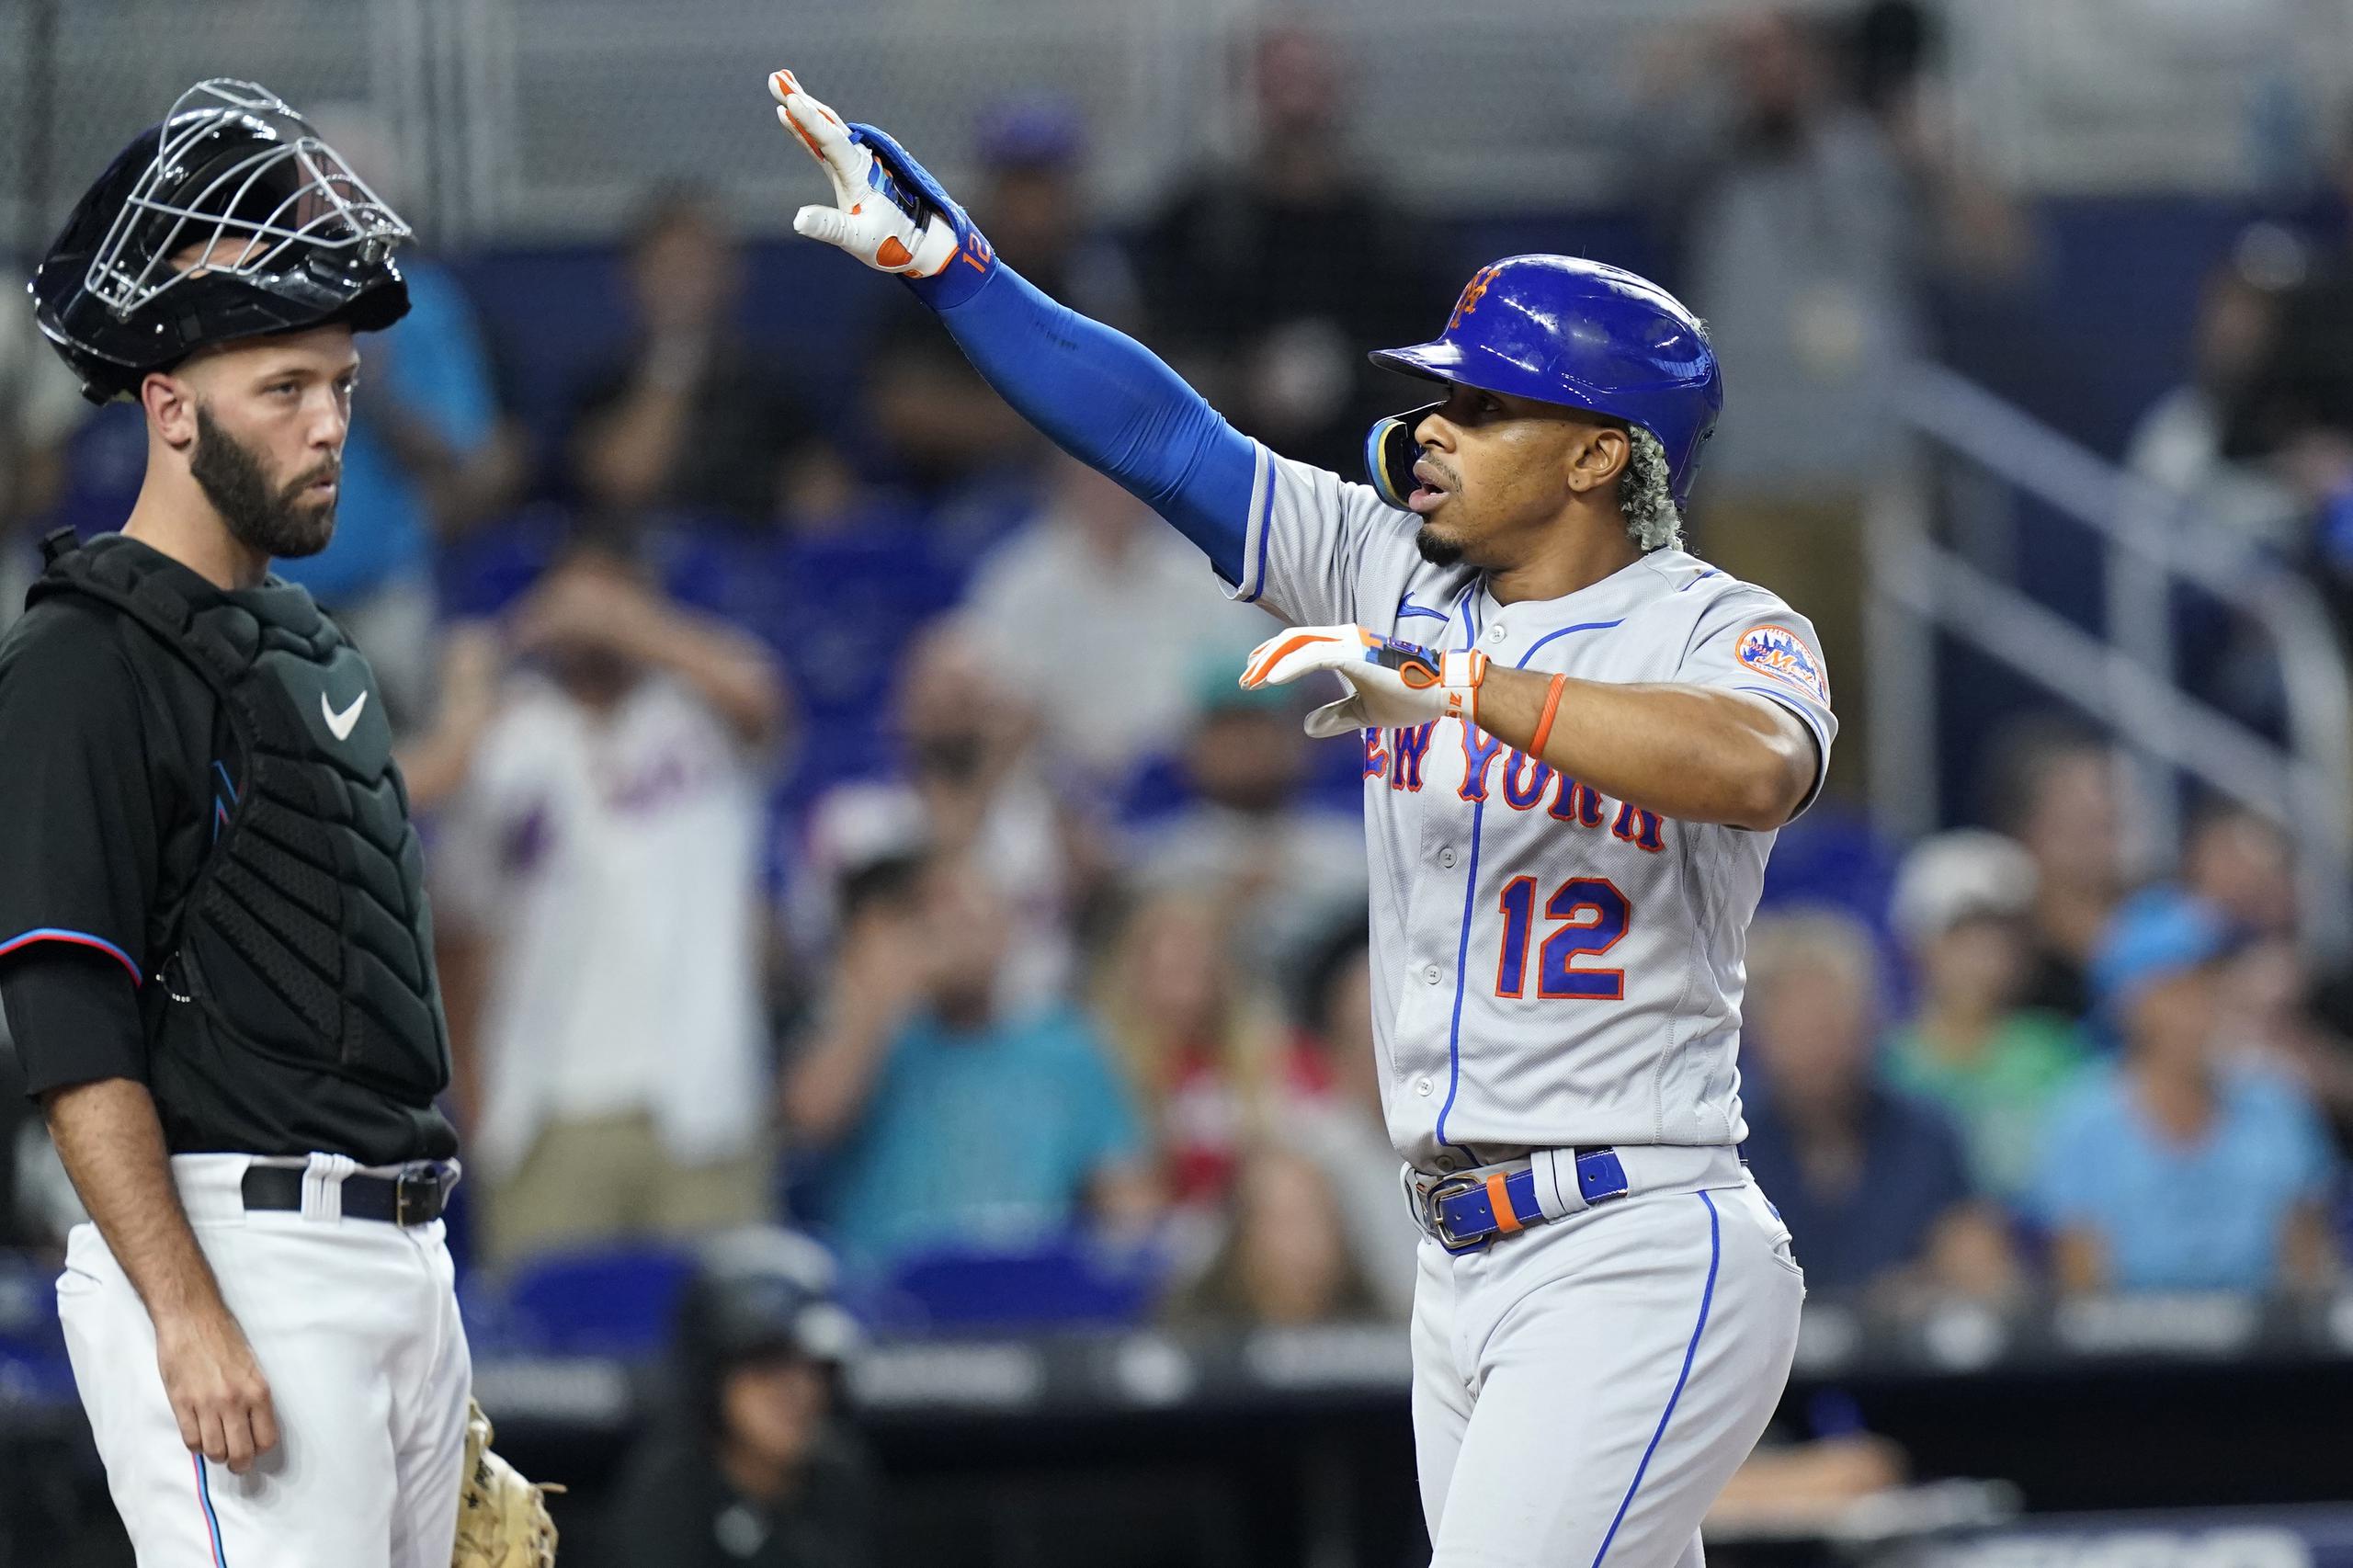 El boricua Francisco Lindor, de los Mets de Nueva York, anota tras conectar un jonrón solitario mientras le observa el catcher Jacob Stallings, de los Marlins de Miami.